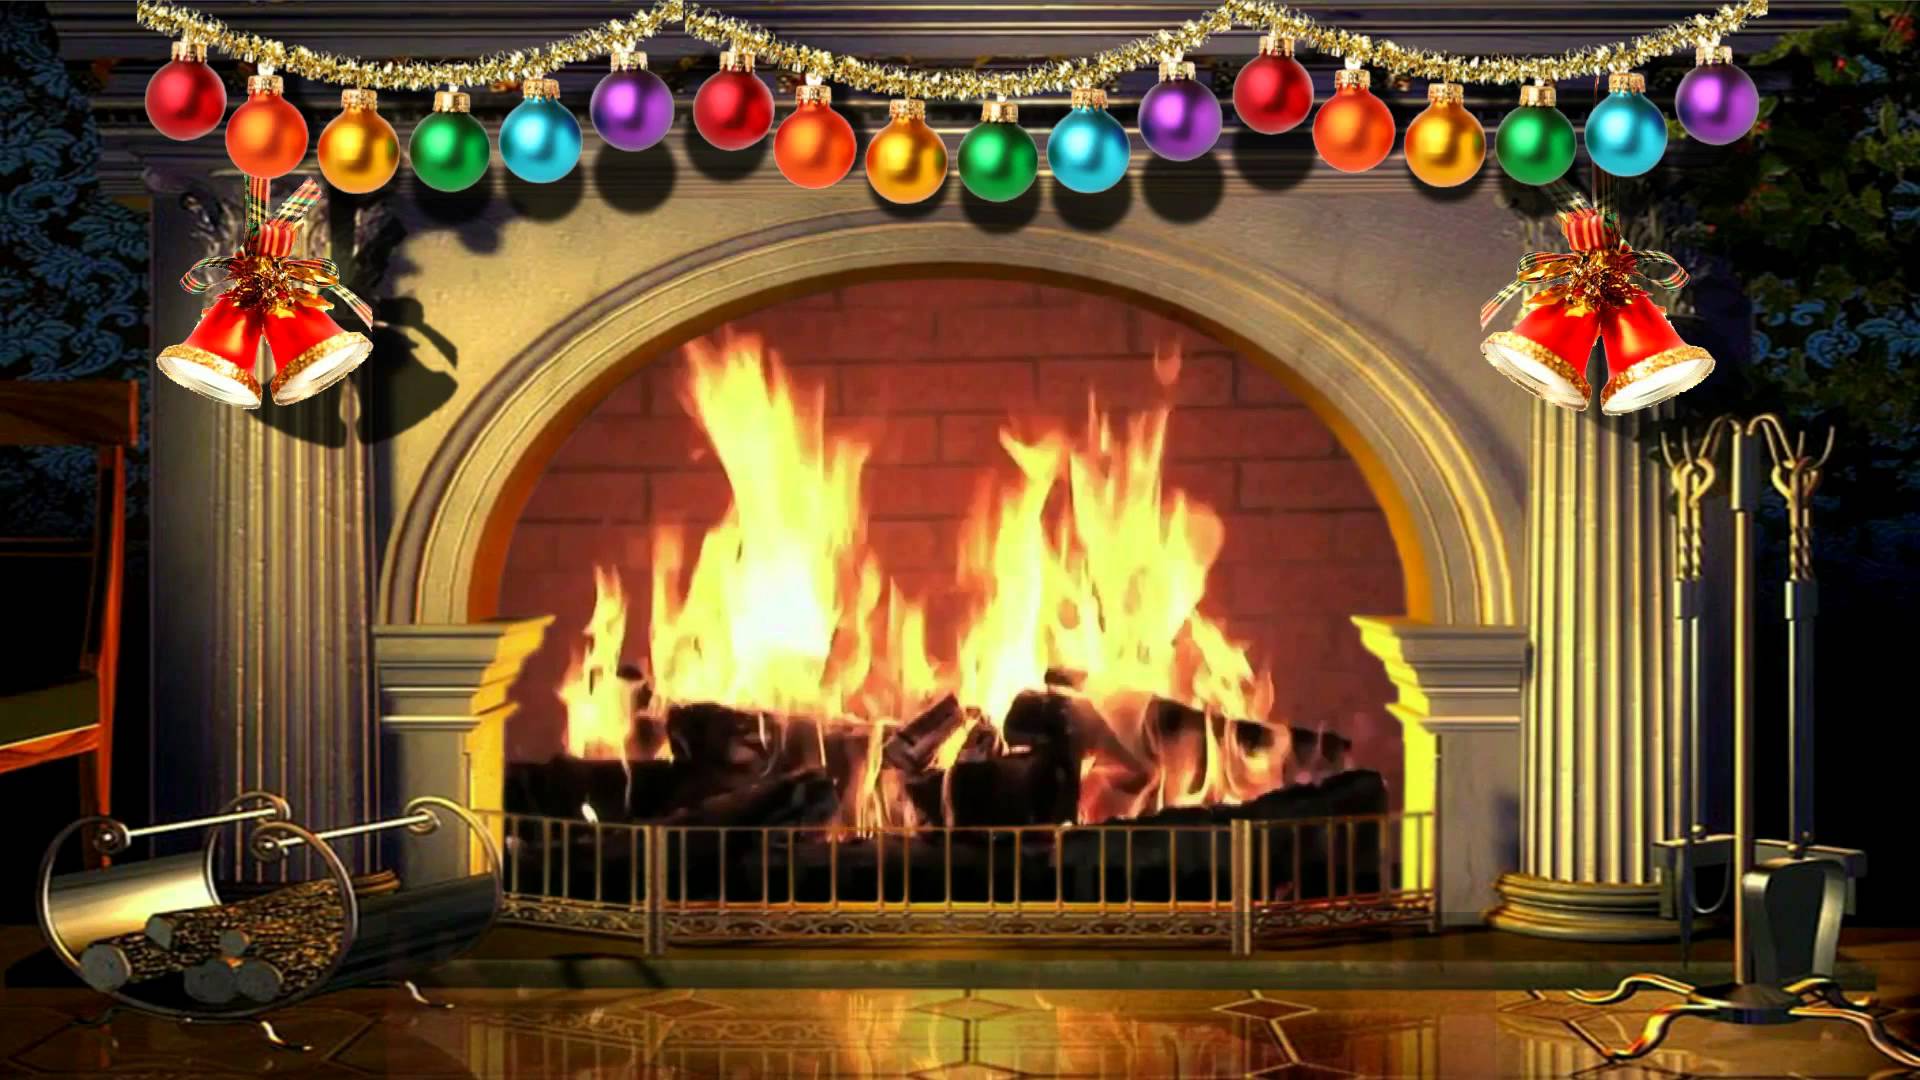 Tận hưởng không gian đón Giáng Sinh năm nay với video nền lò sưởi ảo miễn phí trên YouTube. Tạo không khí ấm áp và chào đón ngày lễ quan trọng này bằng cách tải về và sử dụng video không giới hạn.